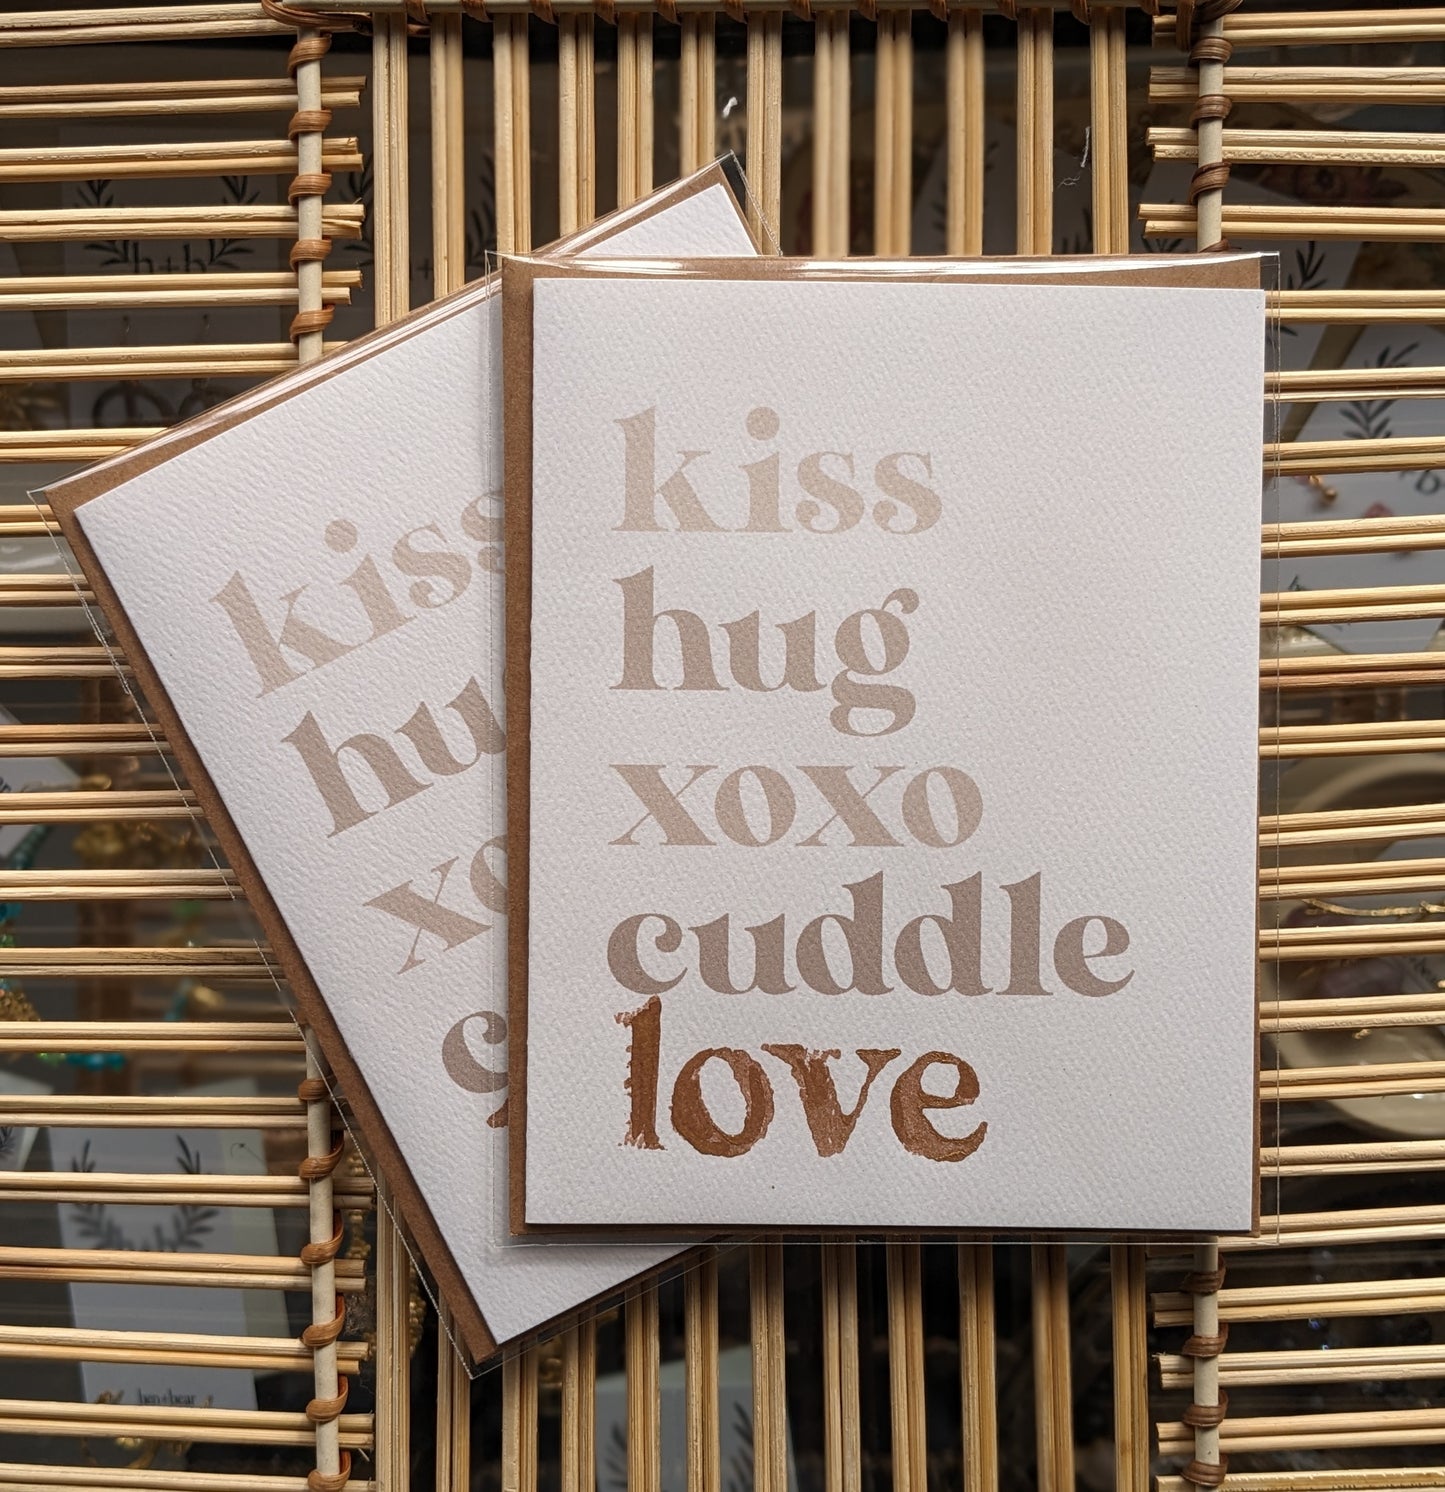 Kiss Hug xoxo Cuddle Love Card